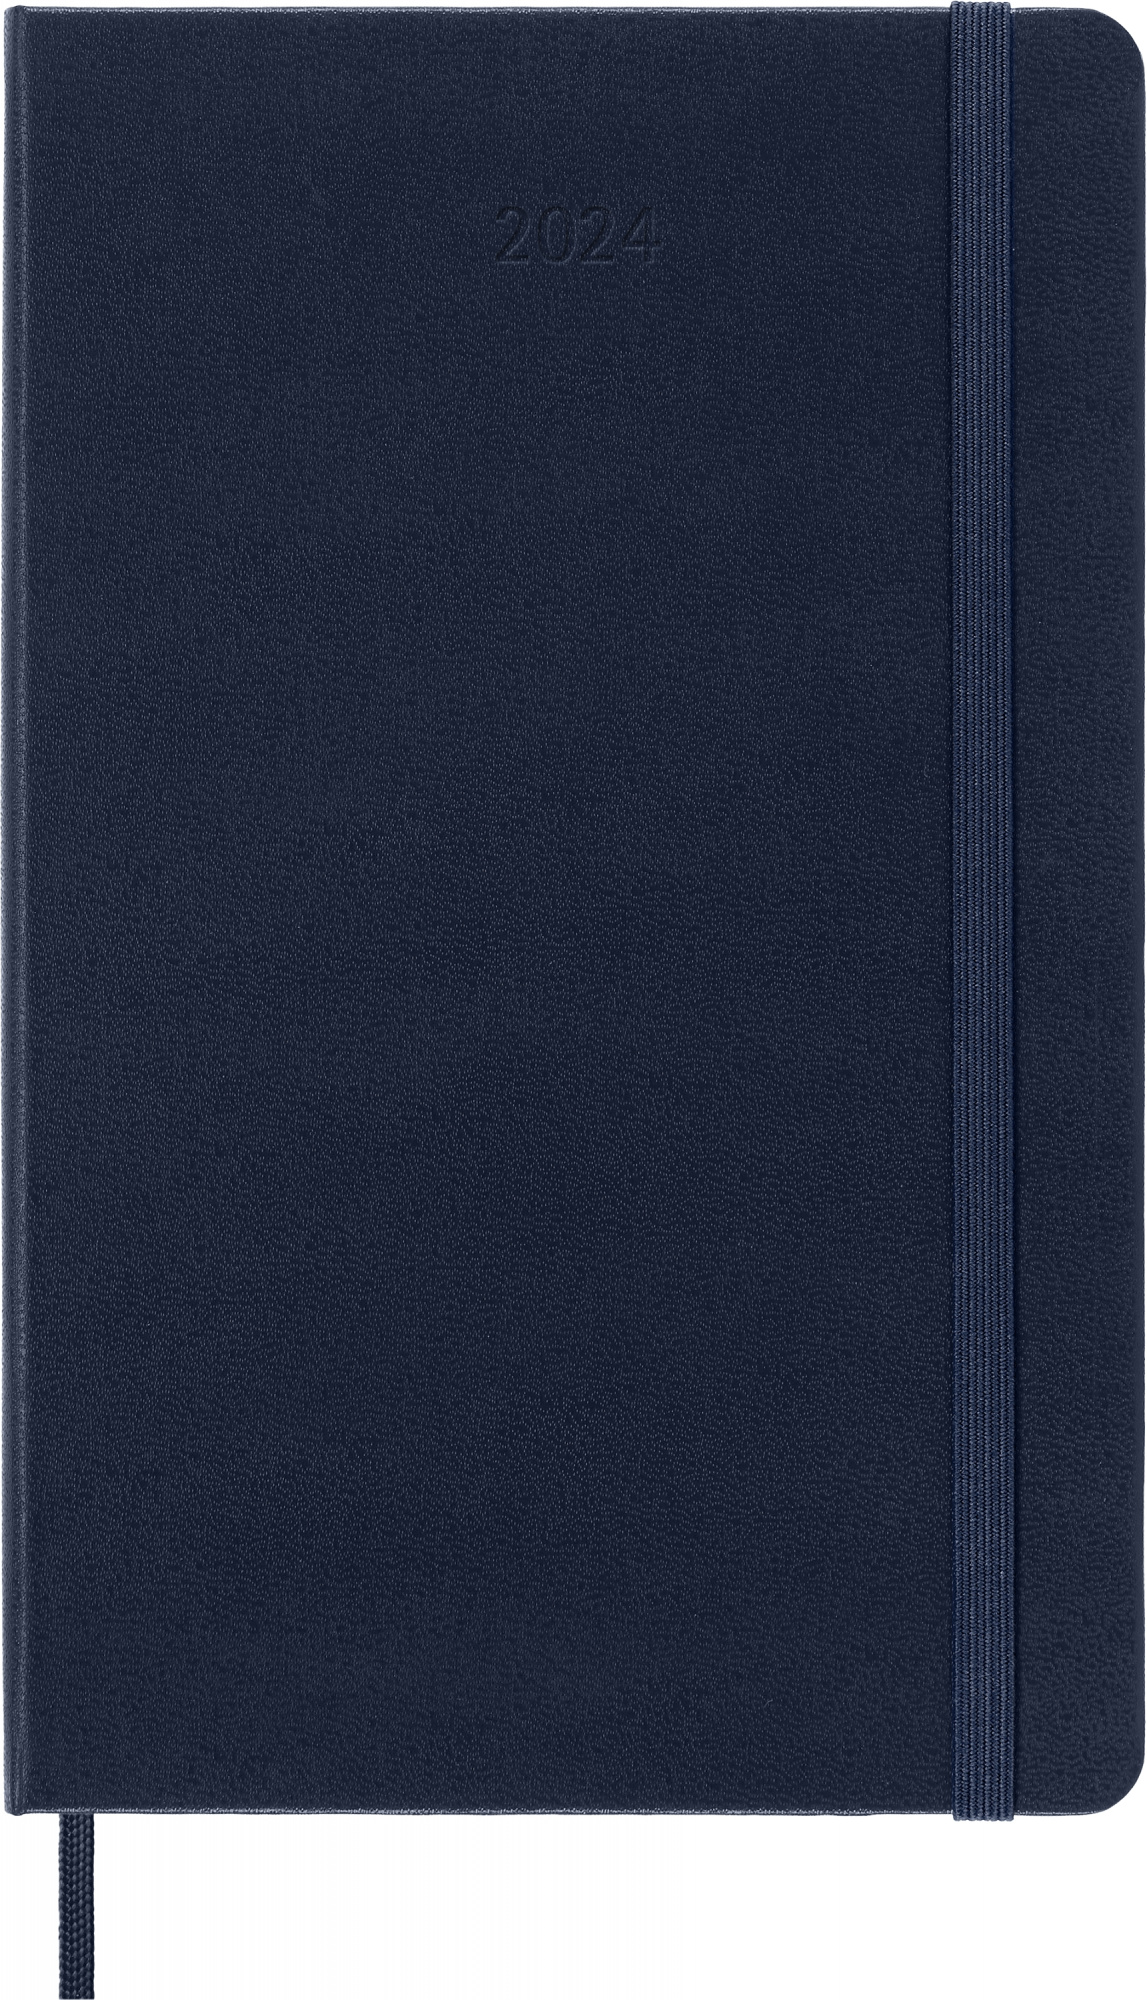 Ежедневник датированный A6 Moleskine CLASSIC Large, в линейку, 400 листов синий сапфир (428849)